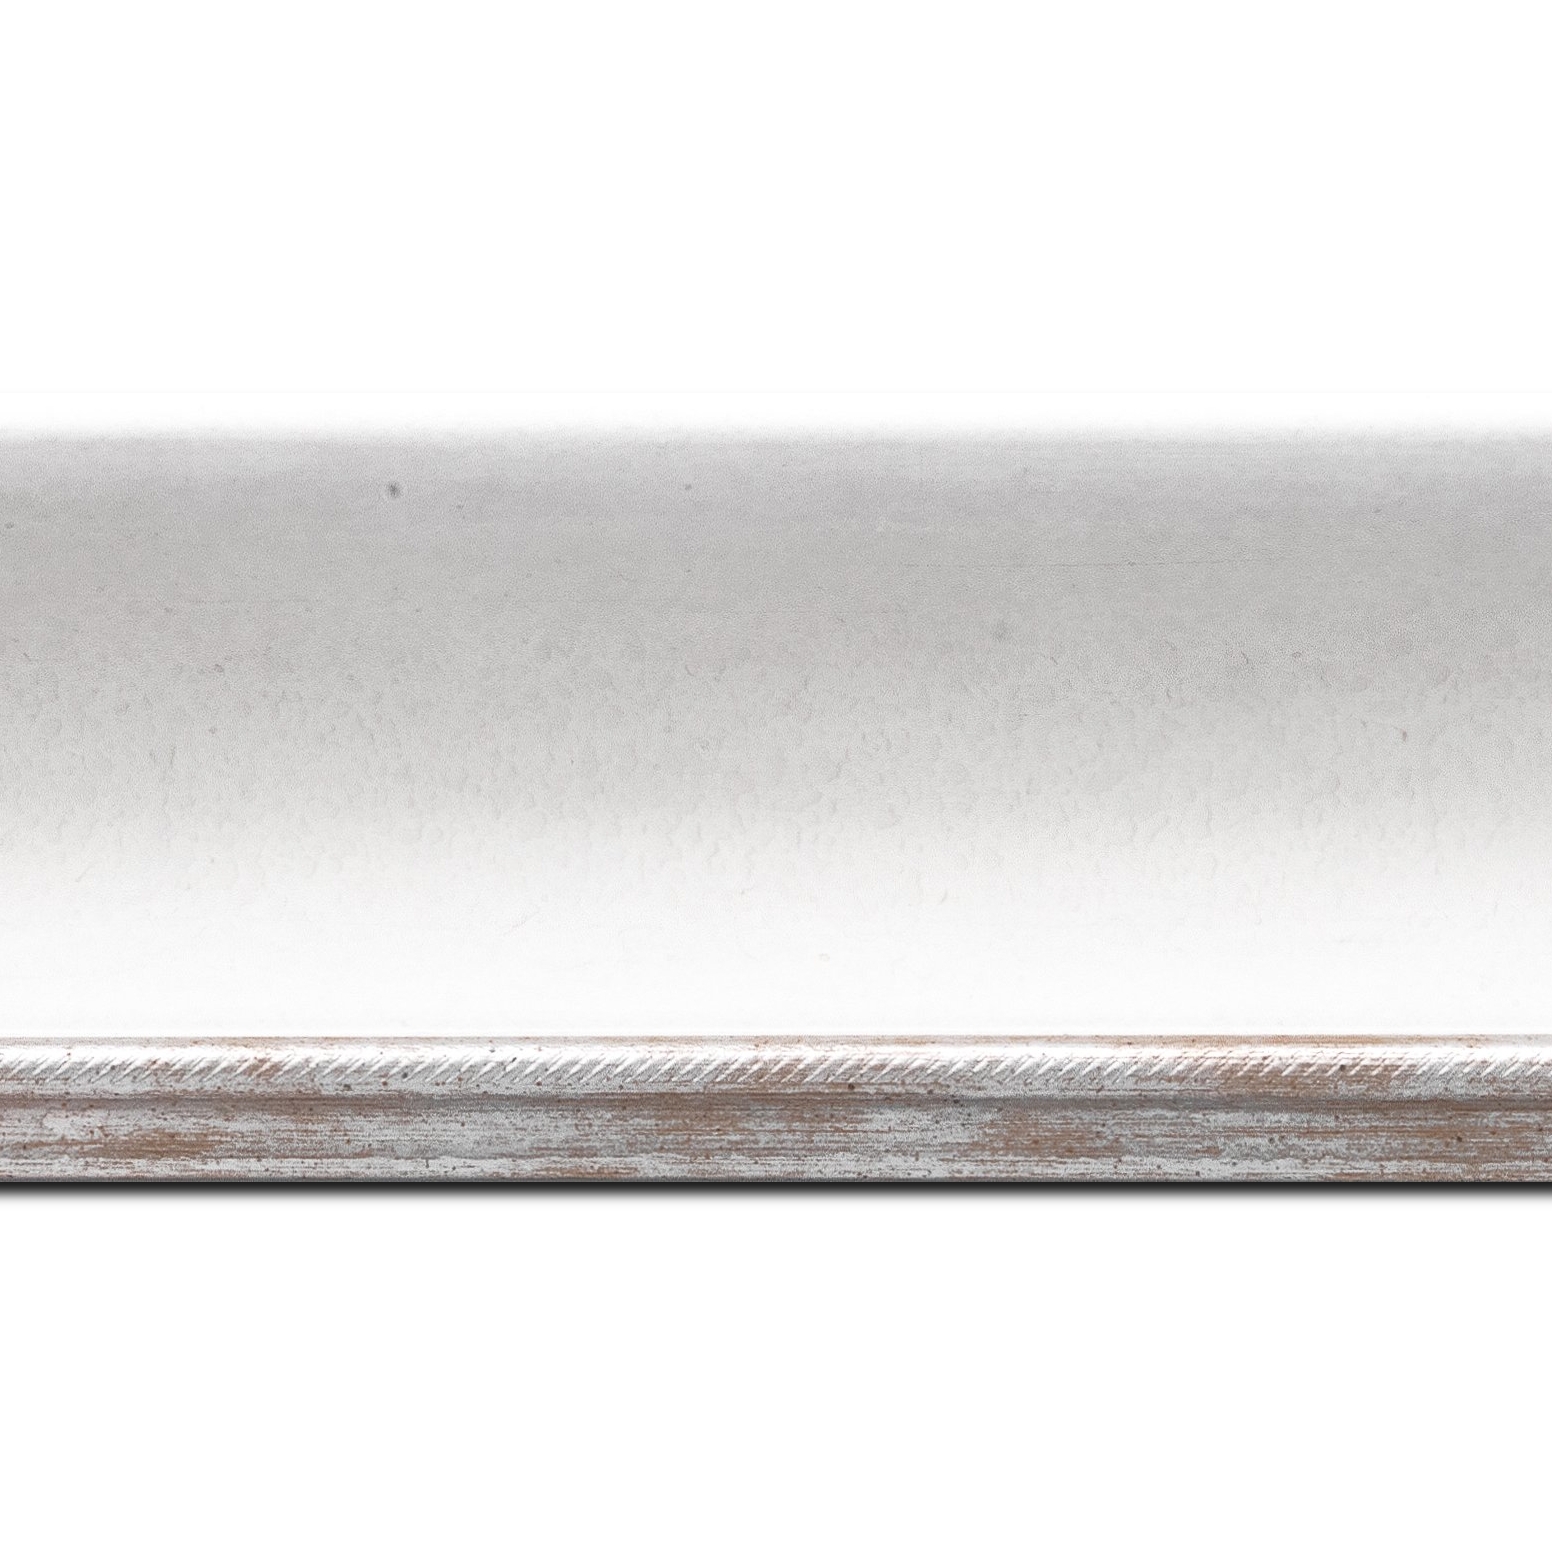 Pack par 12m, bois profil incurvé largeur 7.5cm de couleur blanc finition antique filet argent(longueur baguette pouvant varier entre 2.40m et 3m selon arrivage des bois)